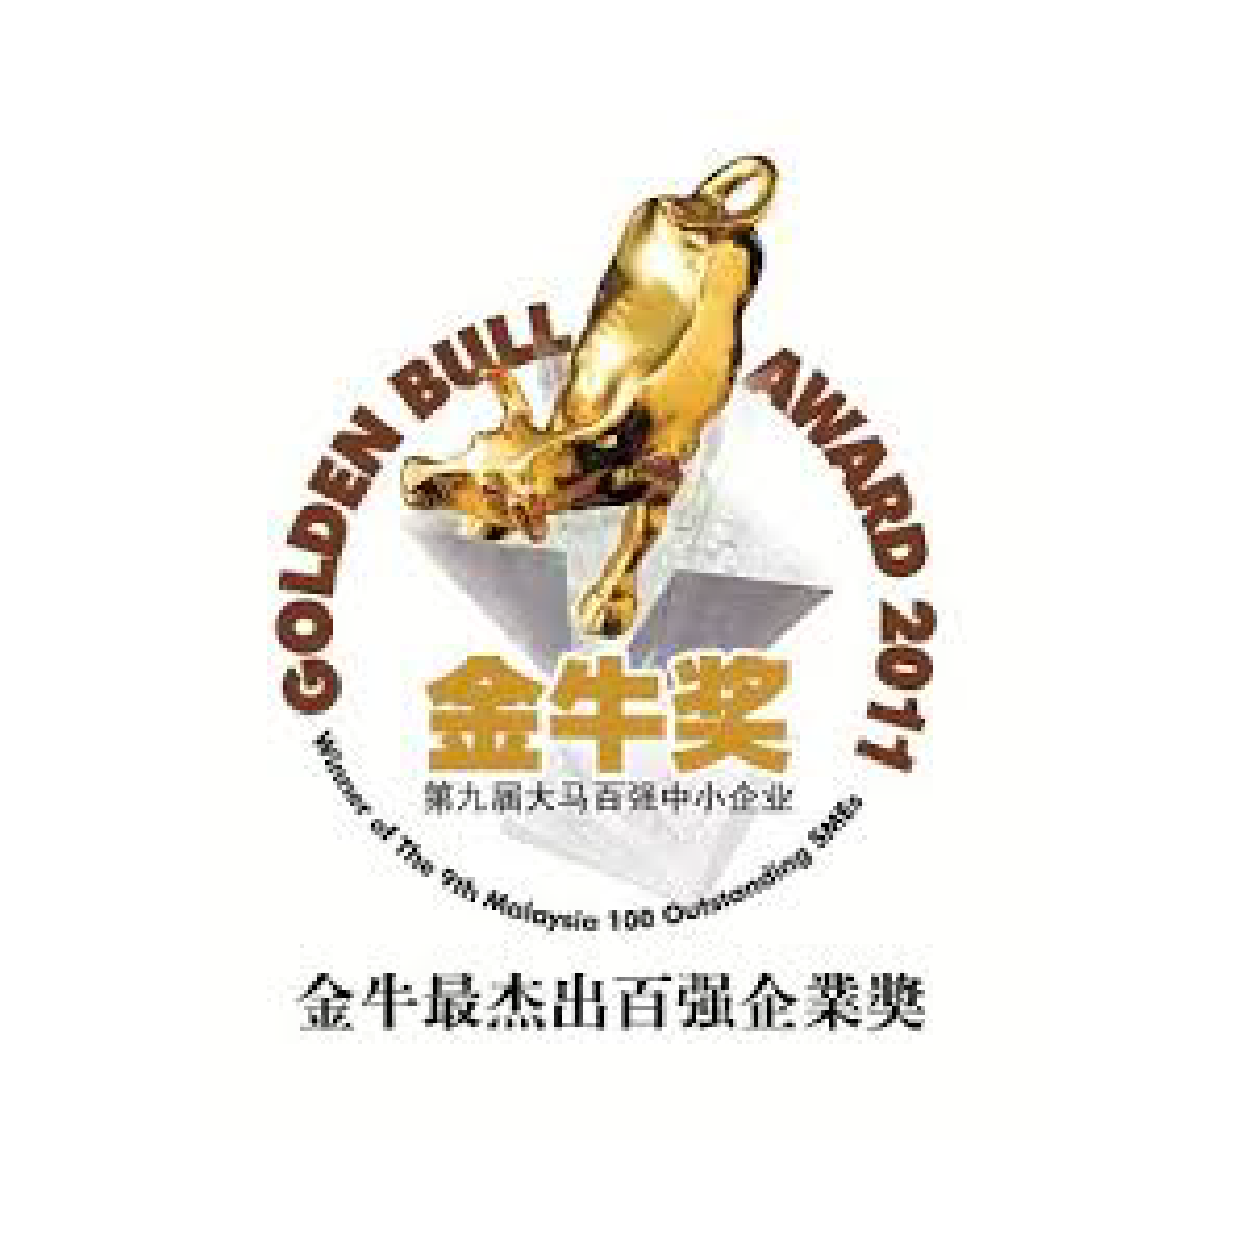 2011 - Super Golden Bull Award